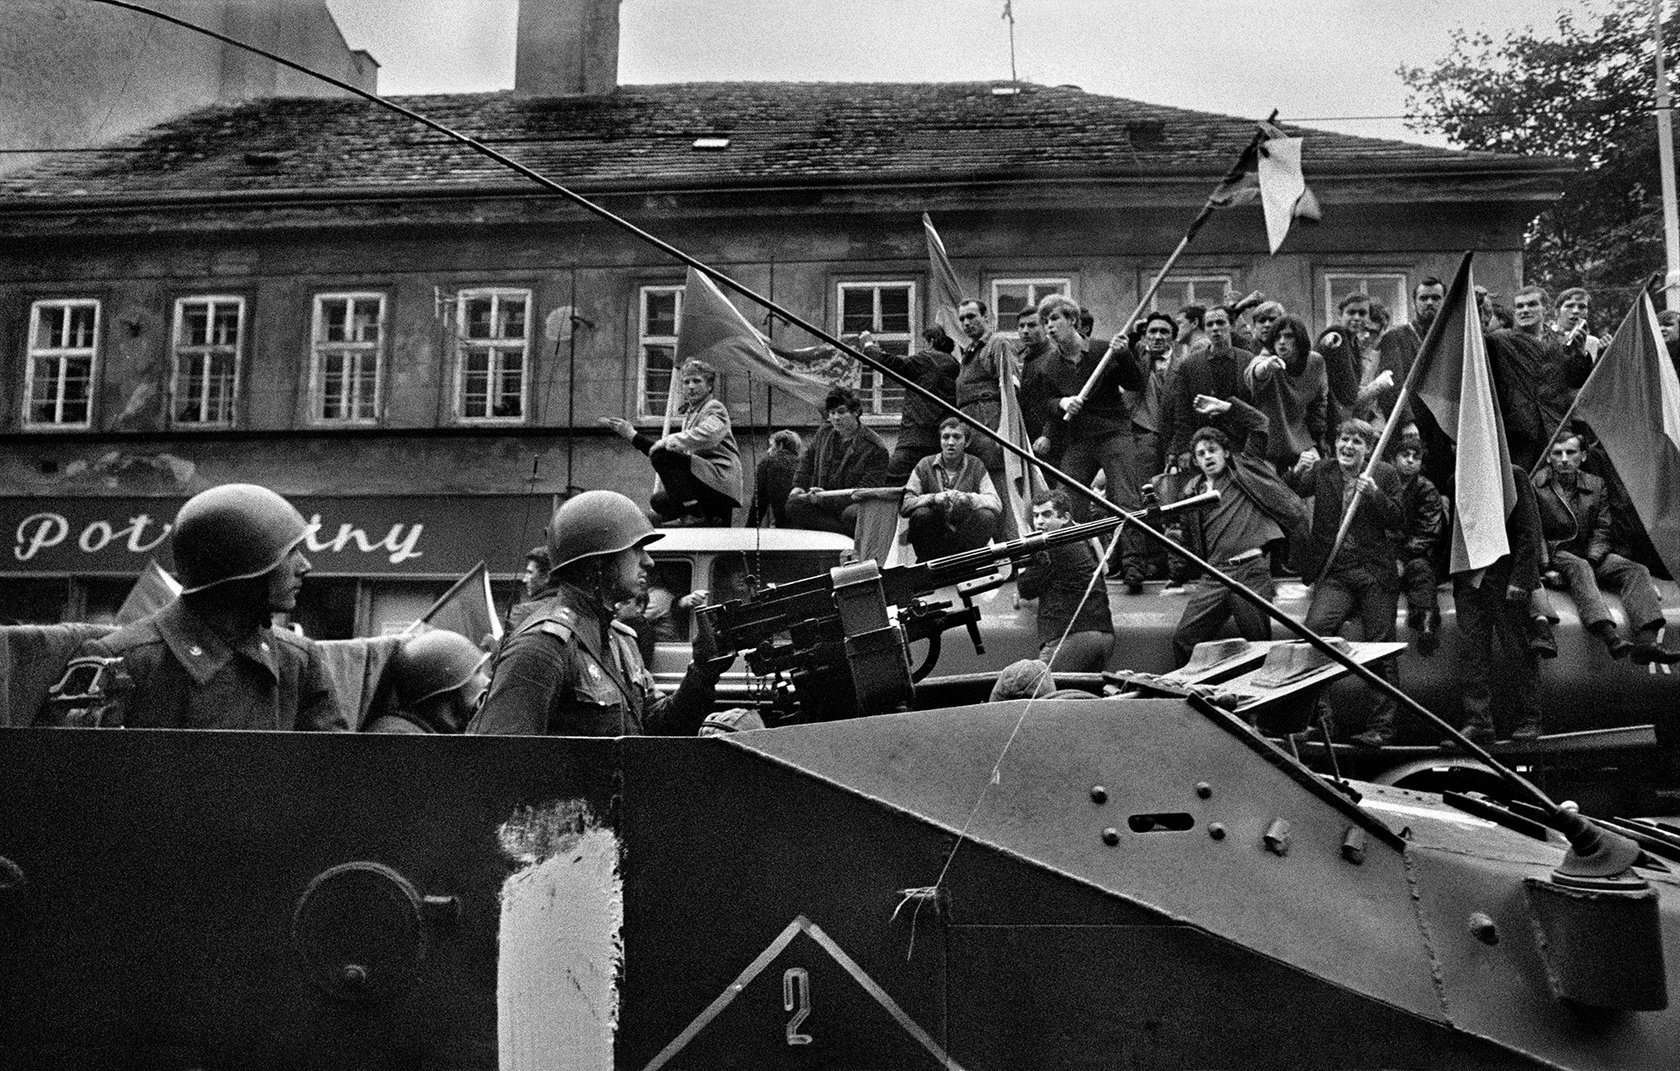 Чехословакия 1935. Операция Дунай Прага 1968. Операция «Дунай». Чехословакия, 1968 год.. Советские войска в Праге Чехословакия 1968. Советская армия в Праге 1968 года.